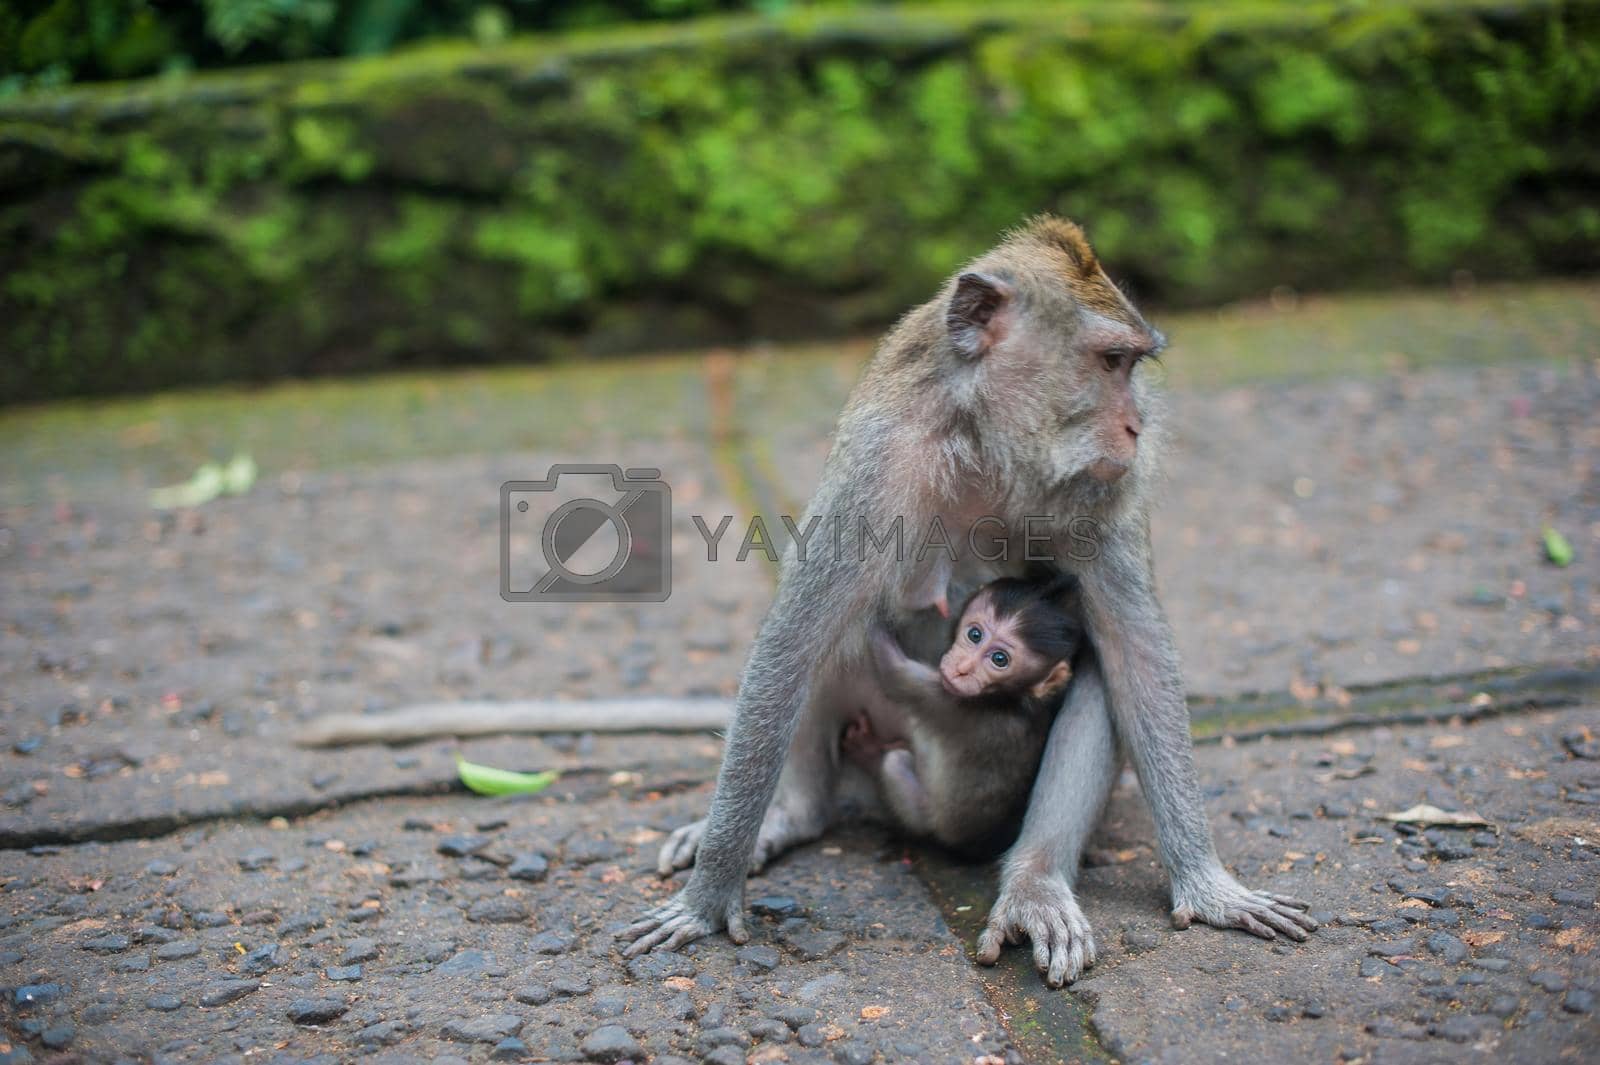 Royalty free image of Monkeys in the monkey forest, Bali by galitskaya